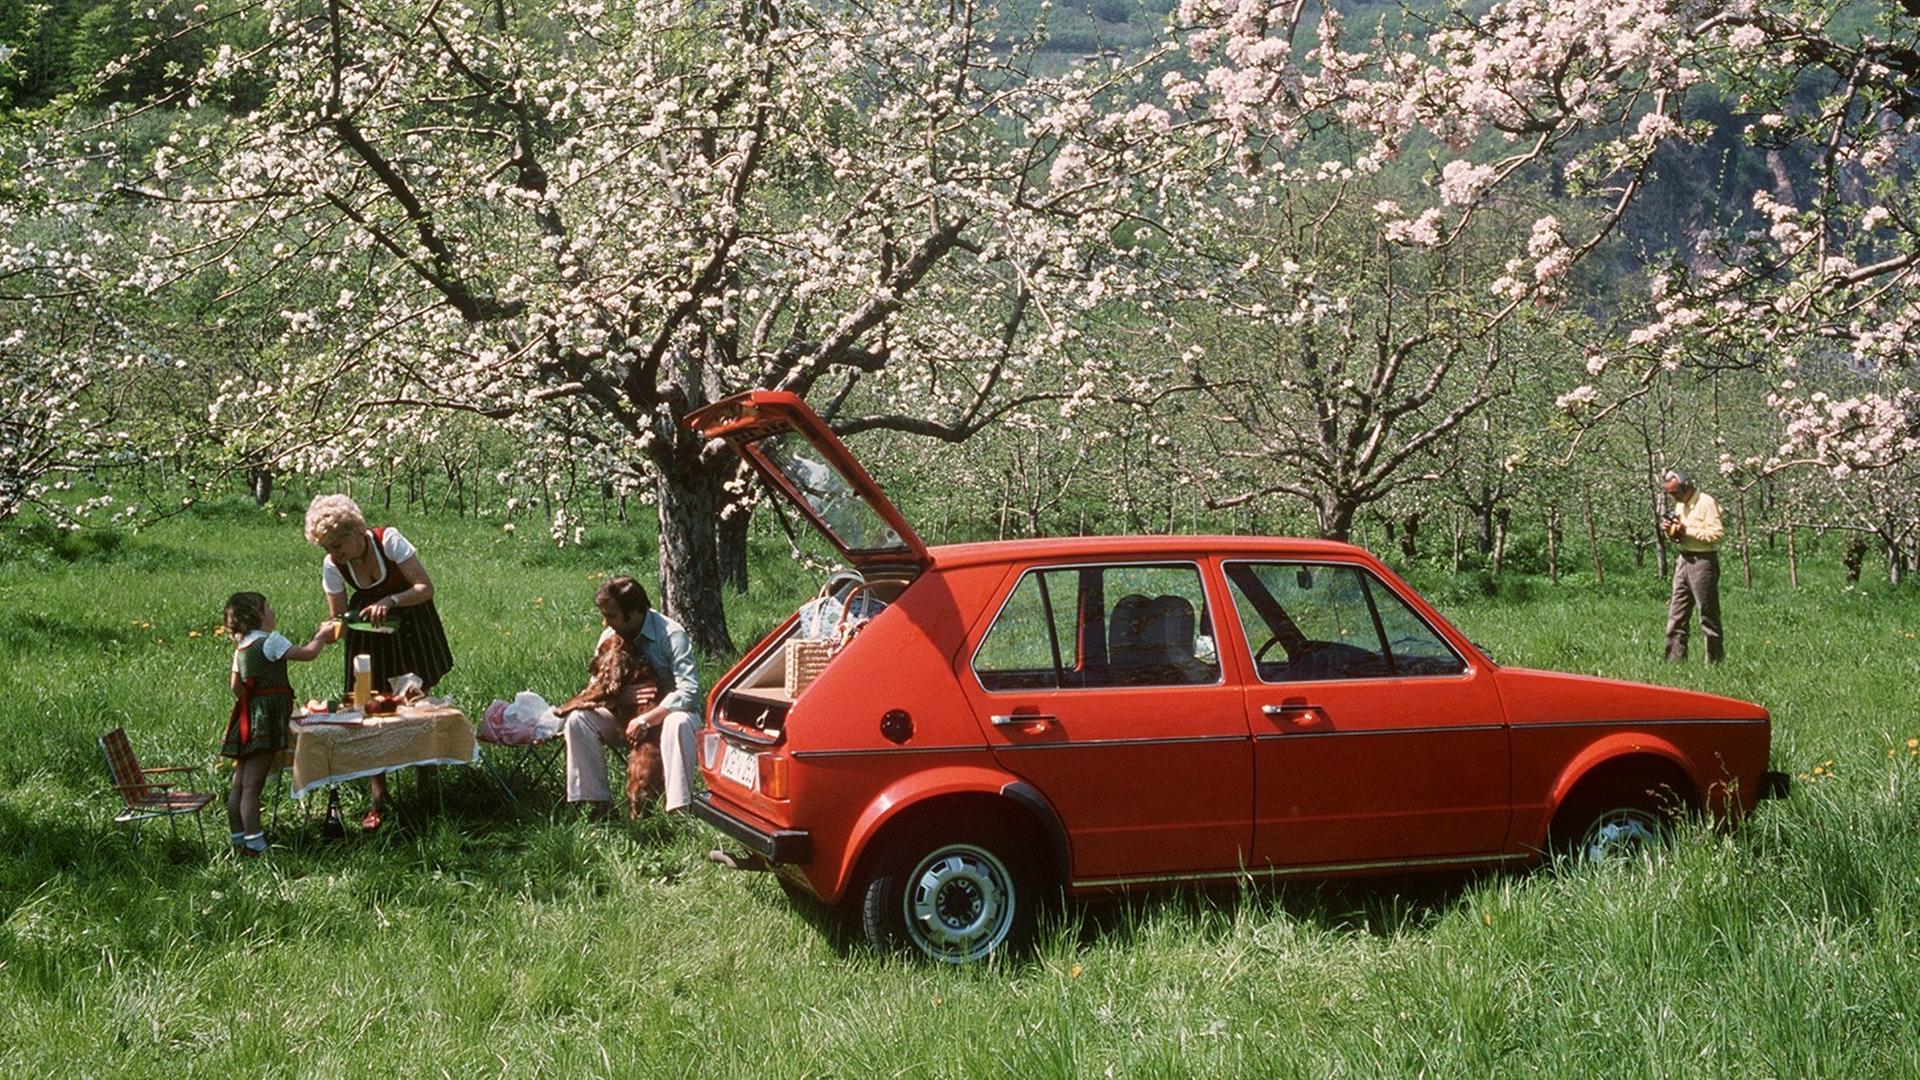 Eine Familie ist mit ihrem roten VW-Golf ins Grüne gefahren und veranstaltet ein Picknick unter blühenden Obstbäumen.